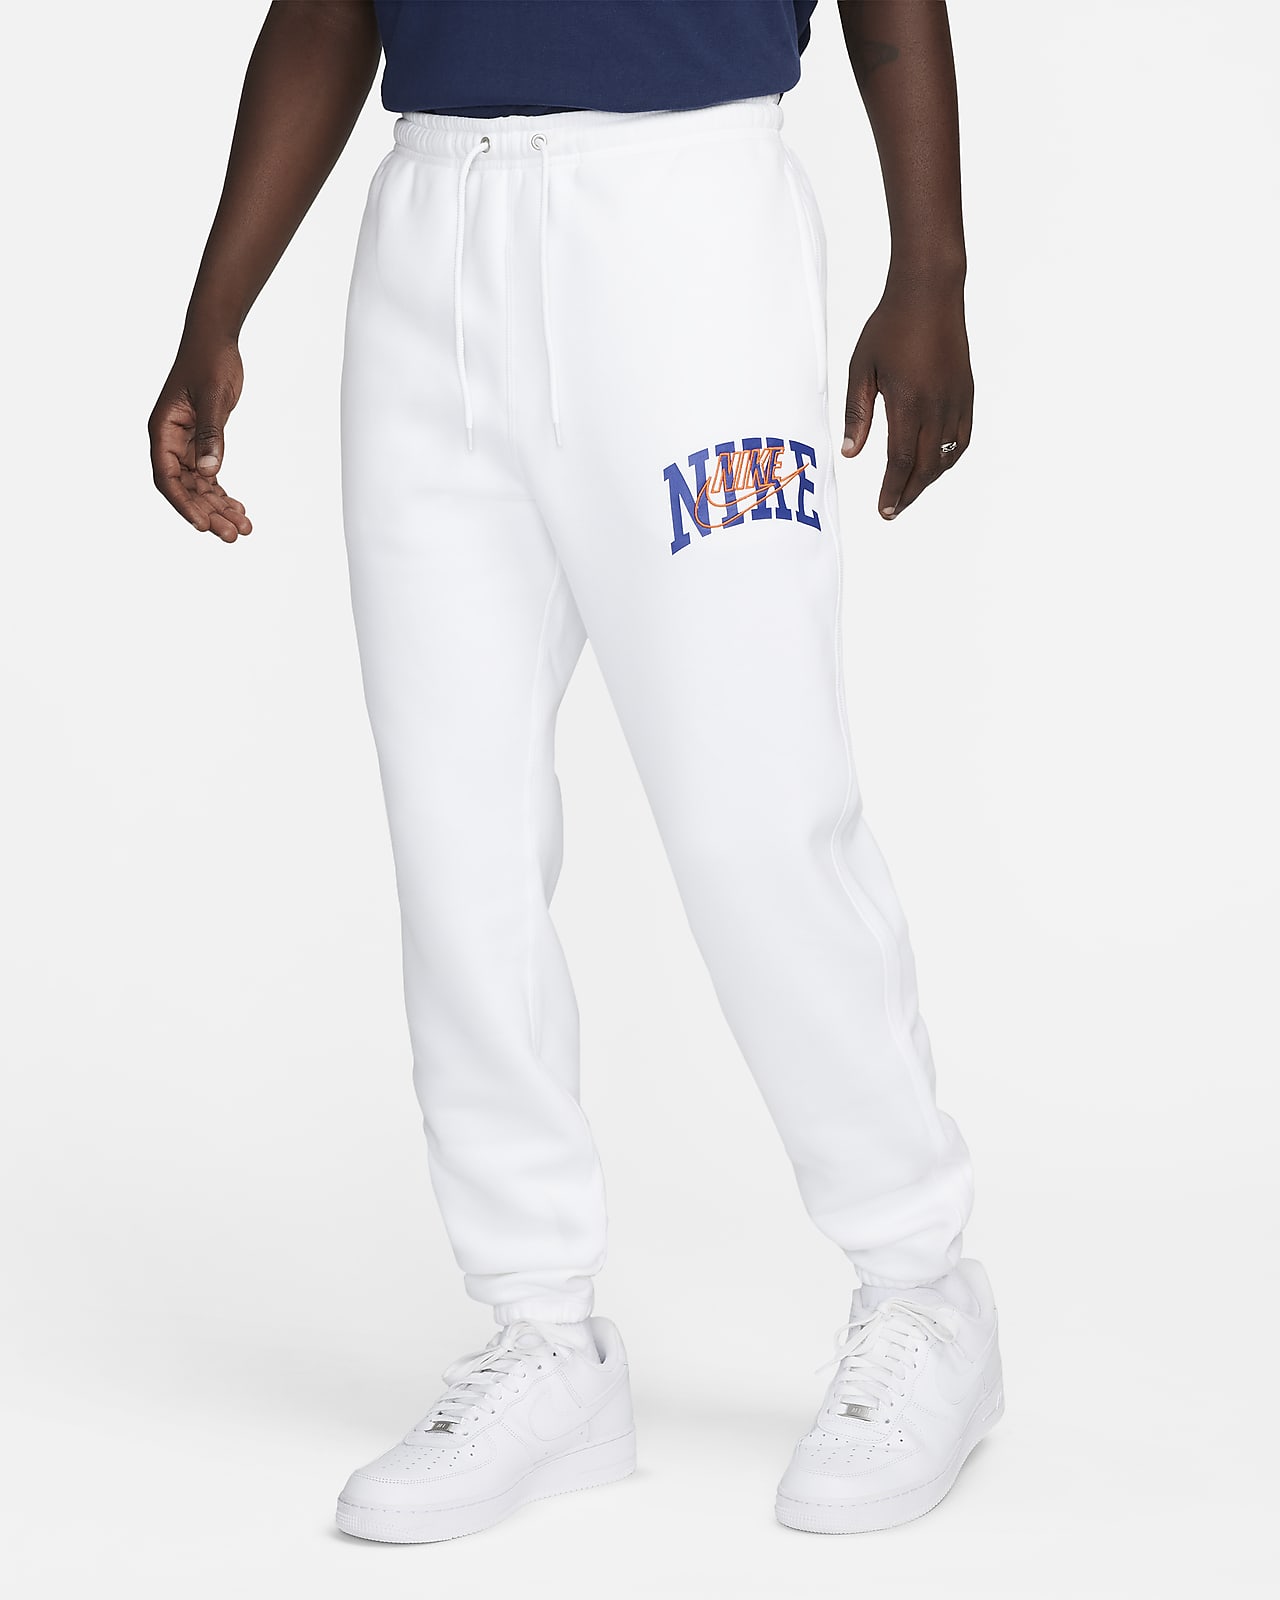 Pants con puños para hombre Nike Club Fleece